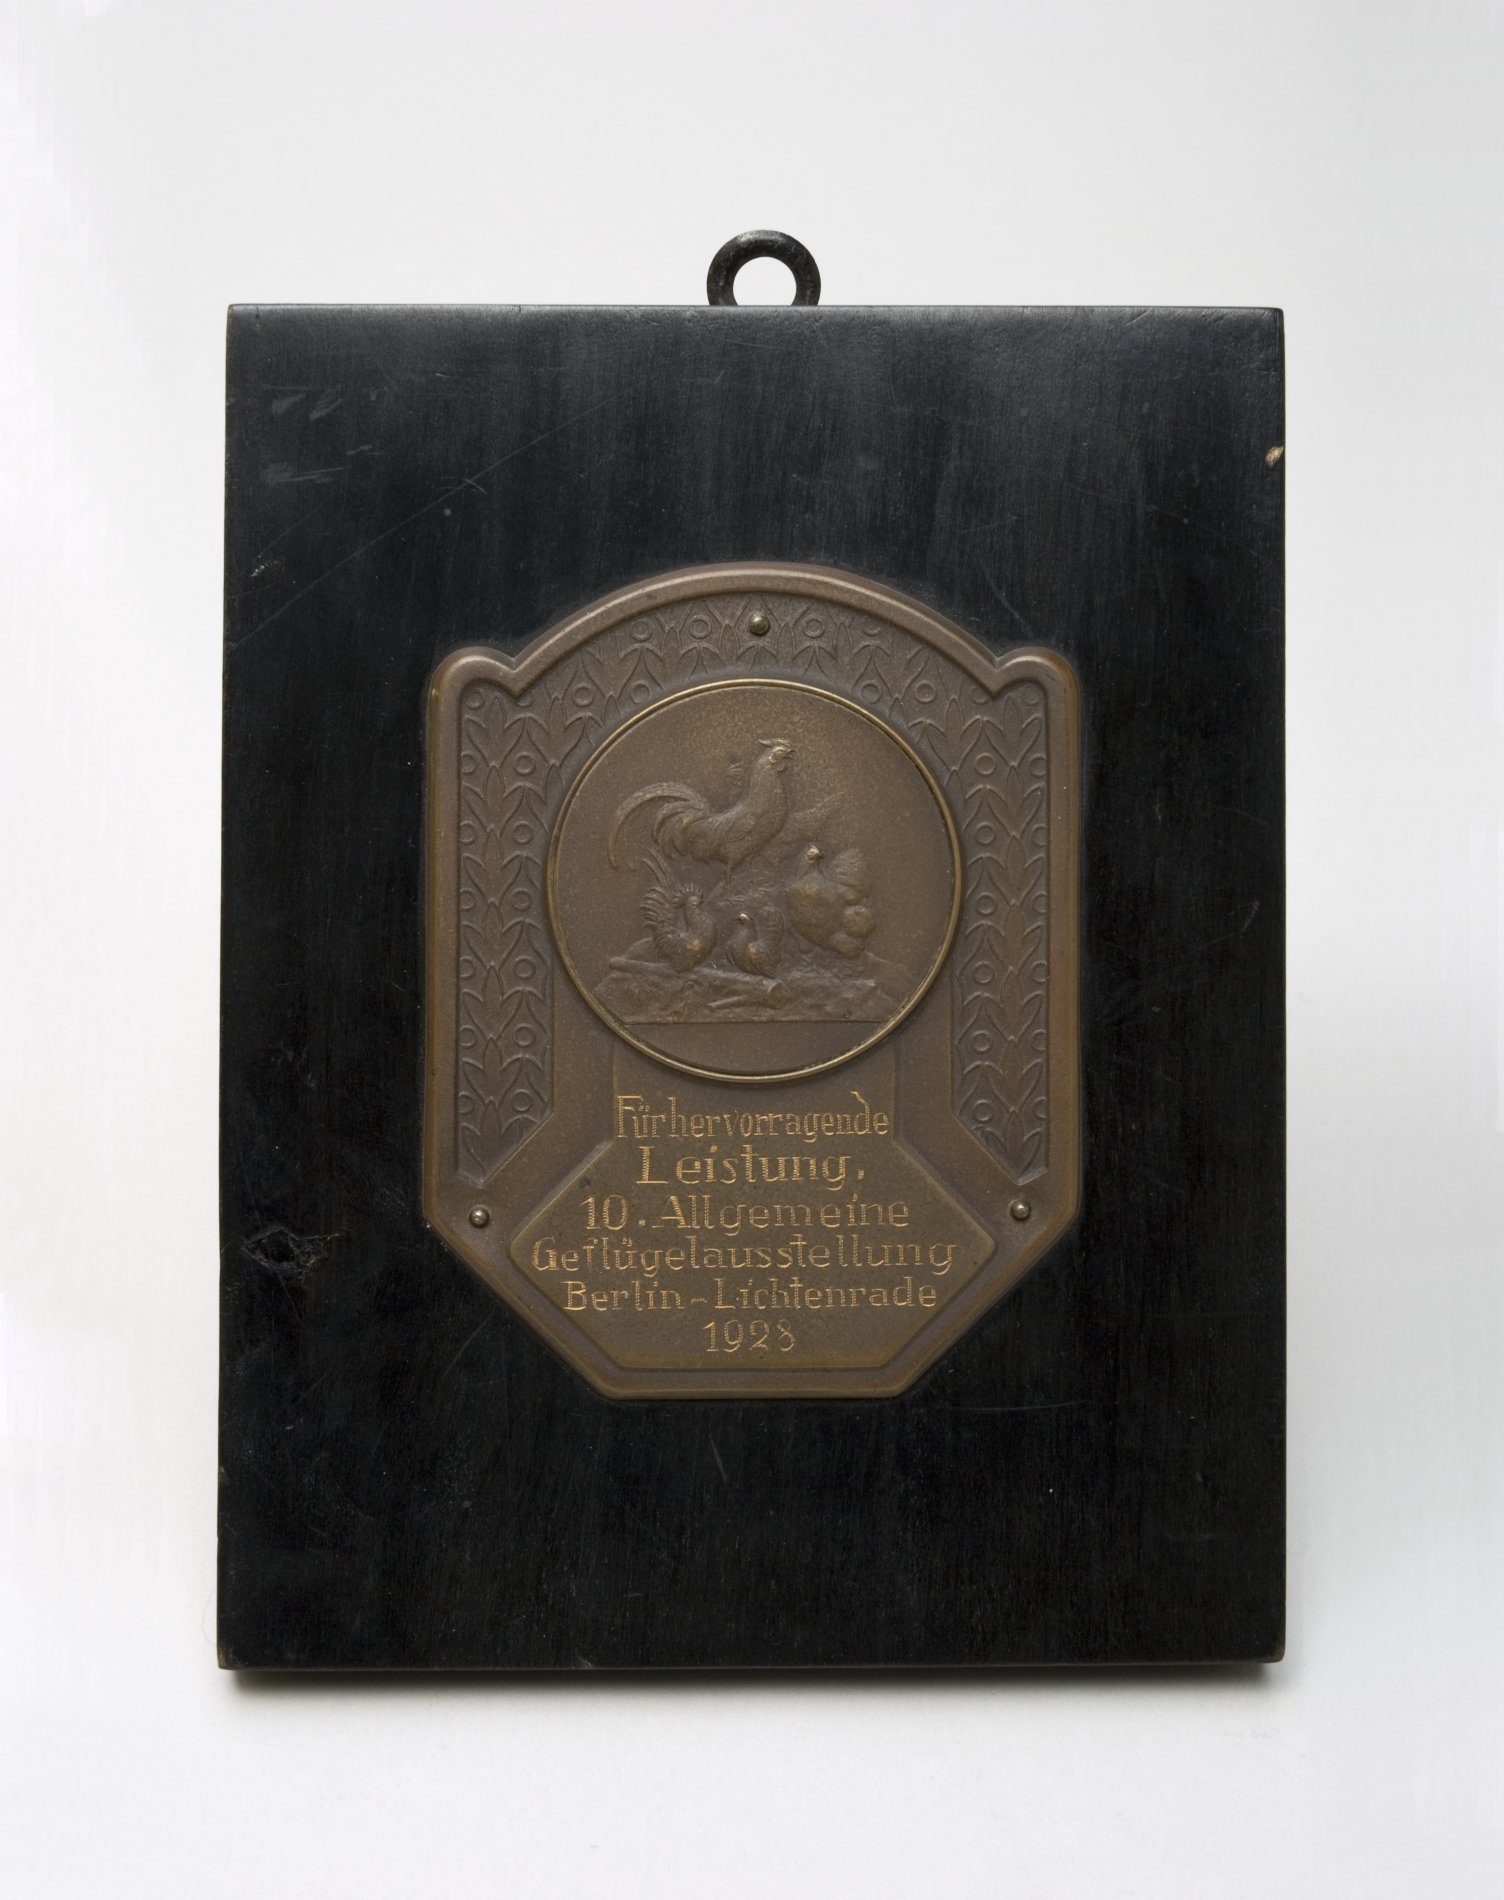 Medaille "10. Allgemeine Geflügelausstellung Berlin-Lichtenrade 1928" (Stiftung Domäne Dahlem - Landgut und Museum, Weiternutzung nur mit Genehmigung des Museums CC BY-NC-SA)